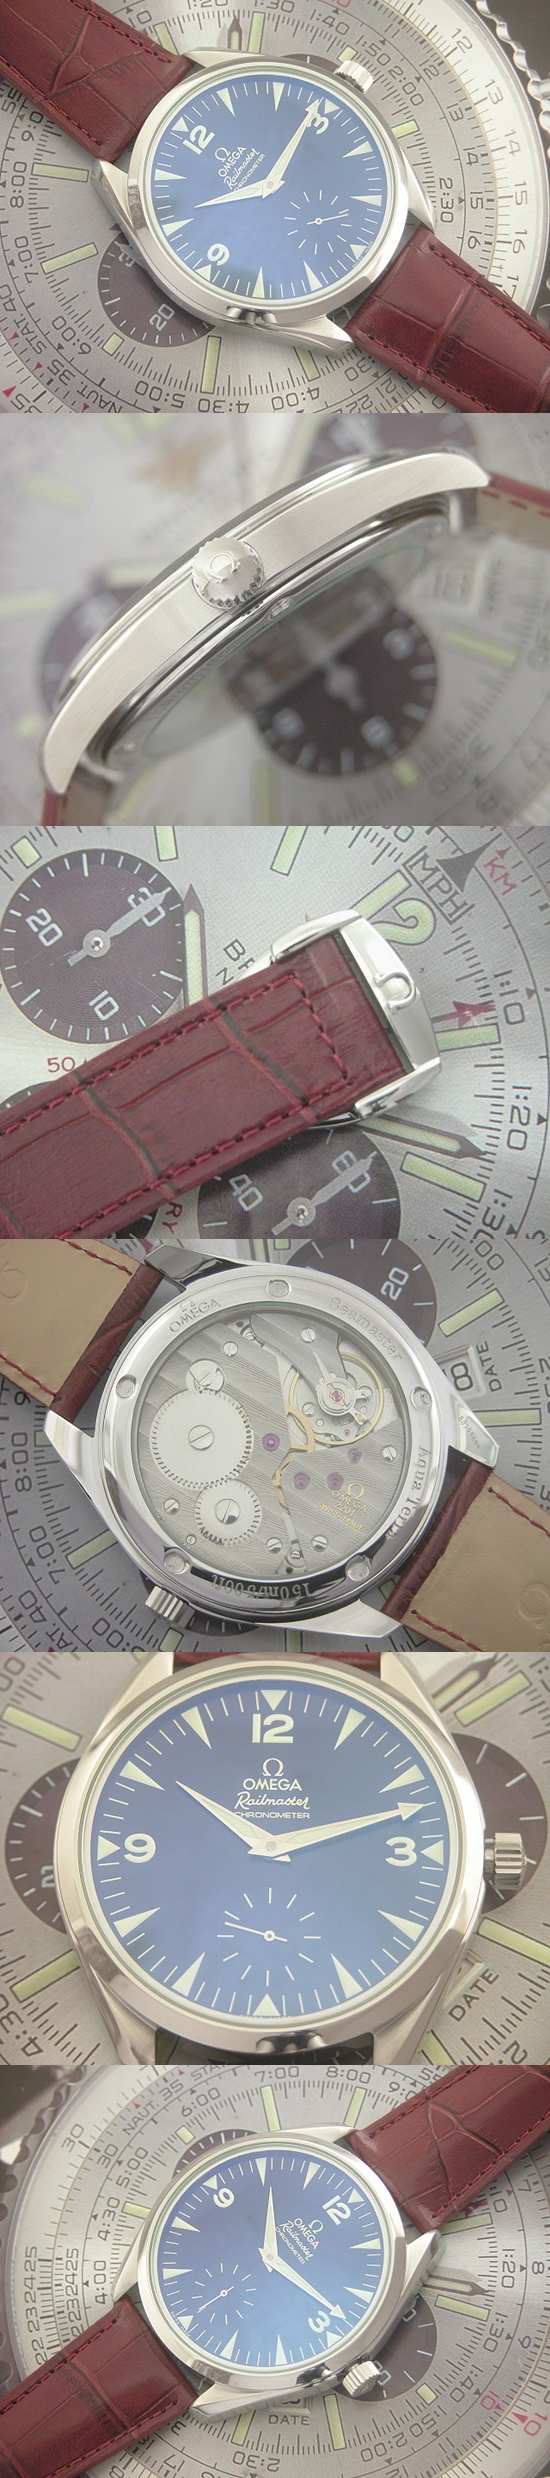 おしゃれなブランド時計がオメガ-シ-マスタ-OMEGA-2493-4-aa 男性用腕時計を提供します.